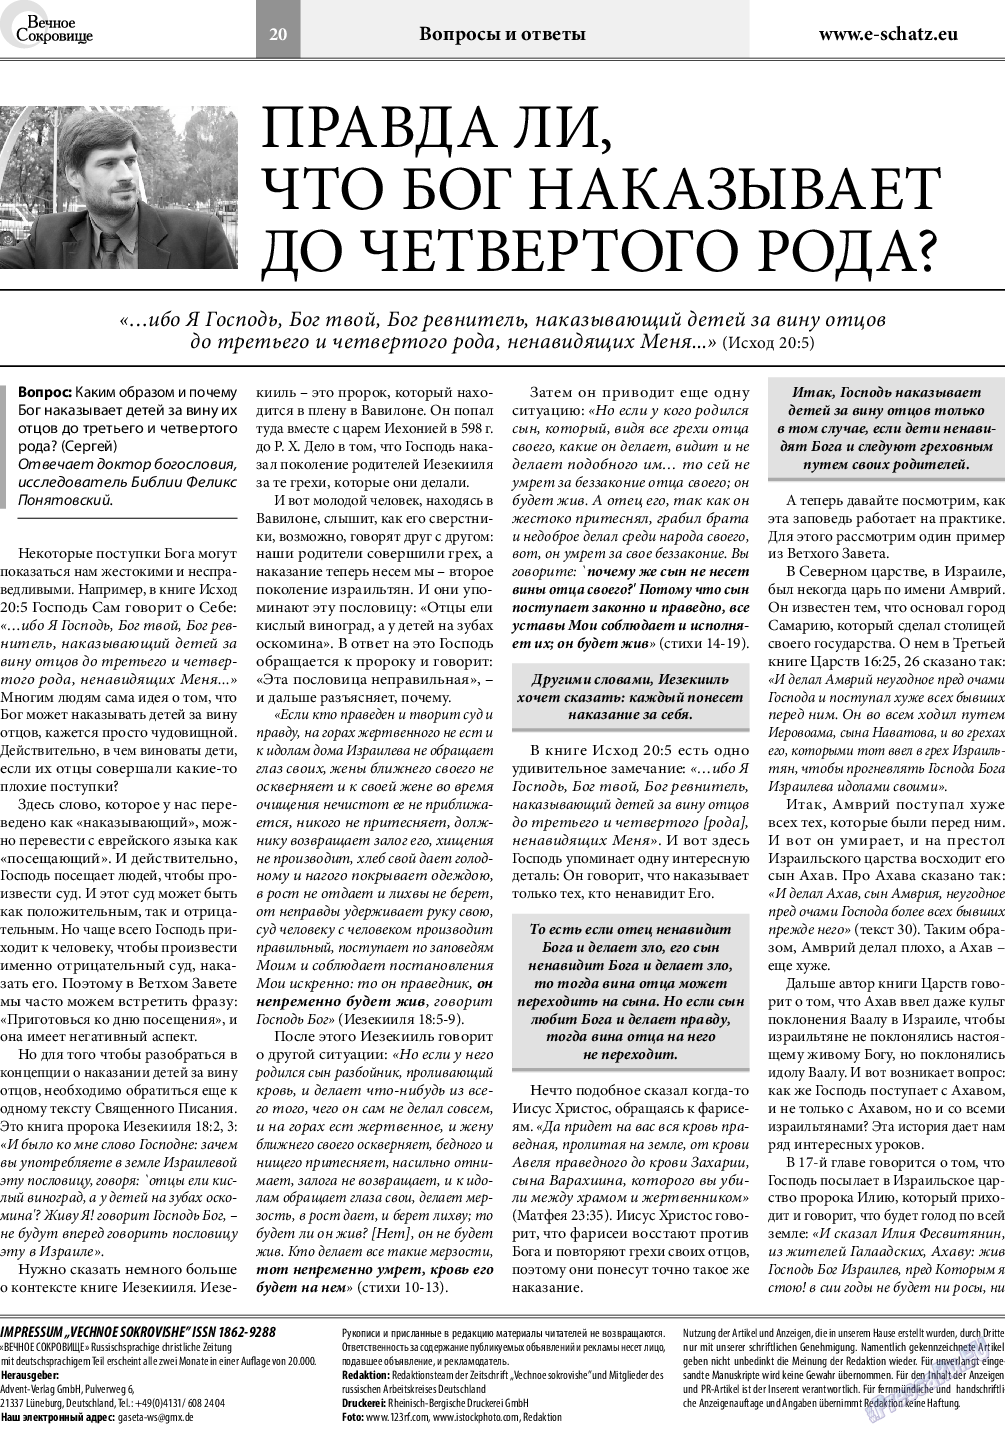 Вечное сокровище, газета. 2019 №6 стр.20